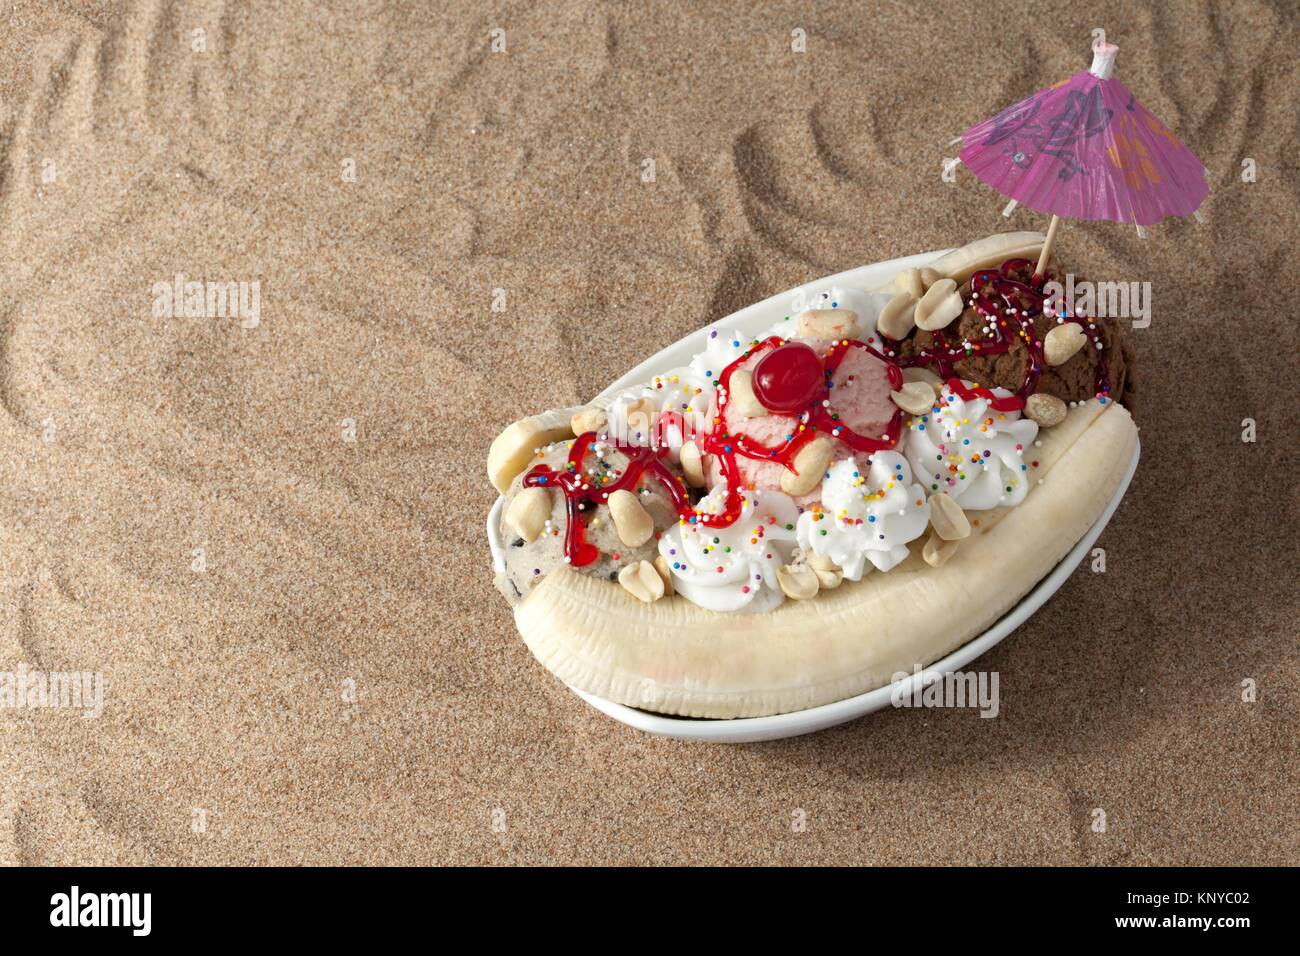 Un bol de banana split sundae sur la plage sable Banque D'Images